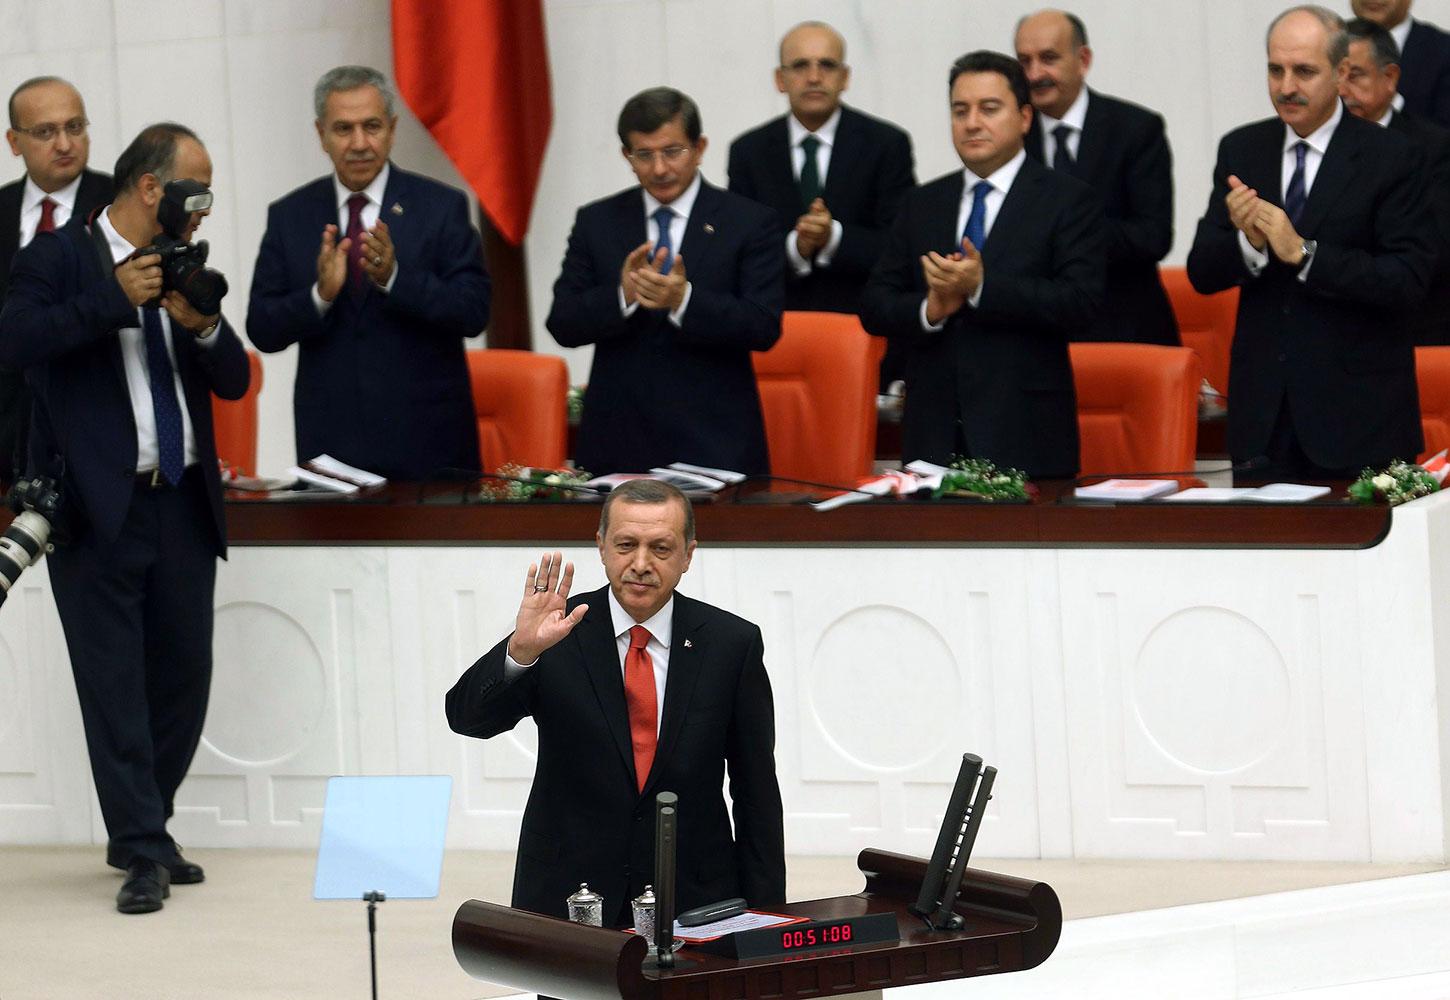 President Erdogan i turkiska parlamentet under torsdagen.